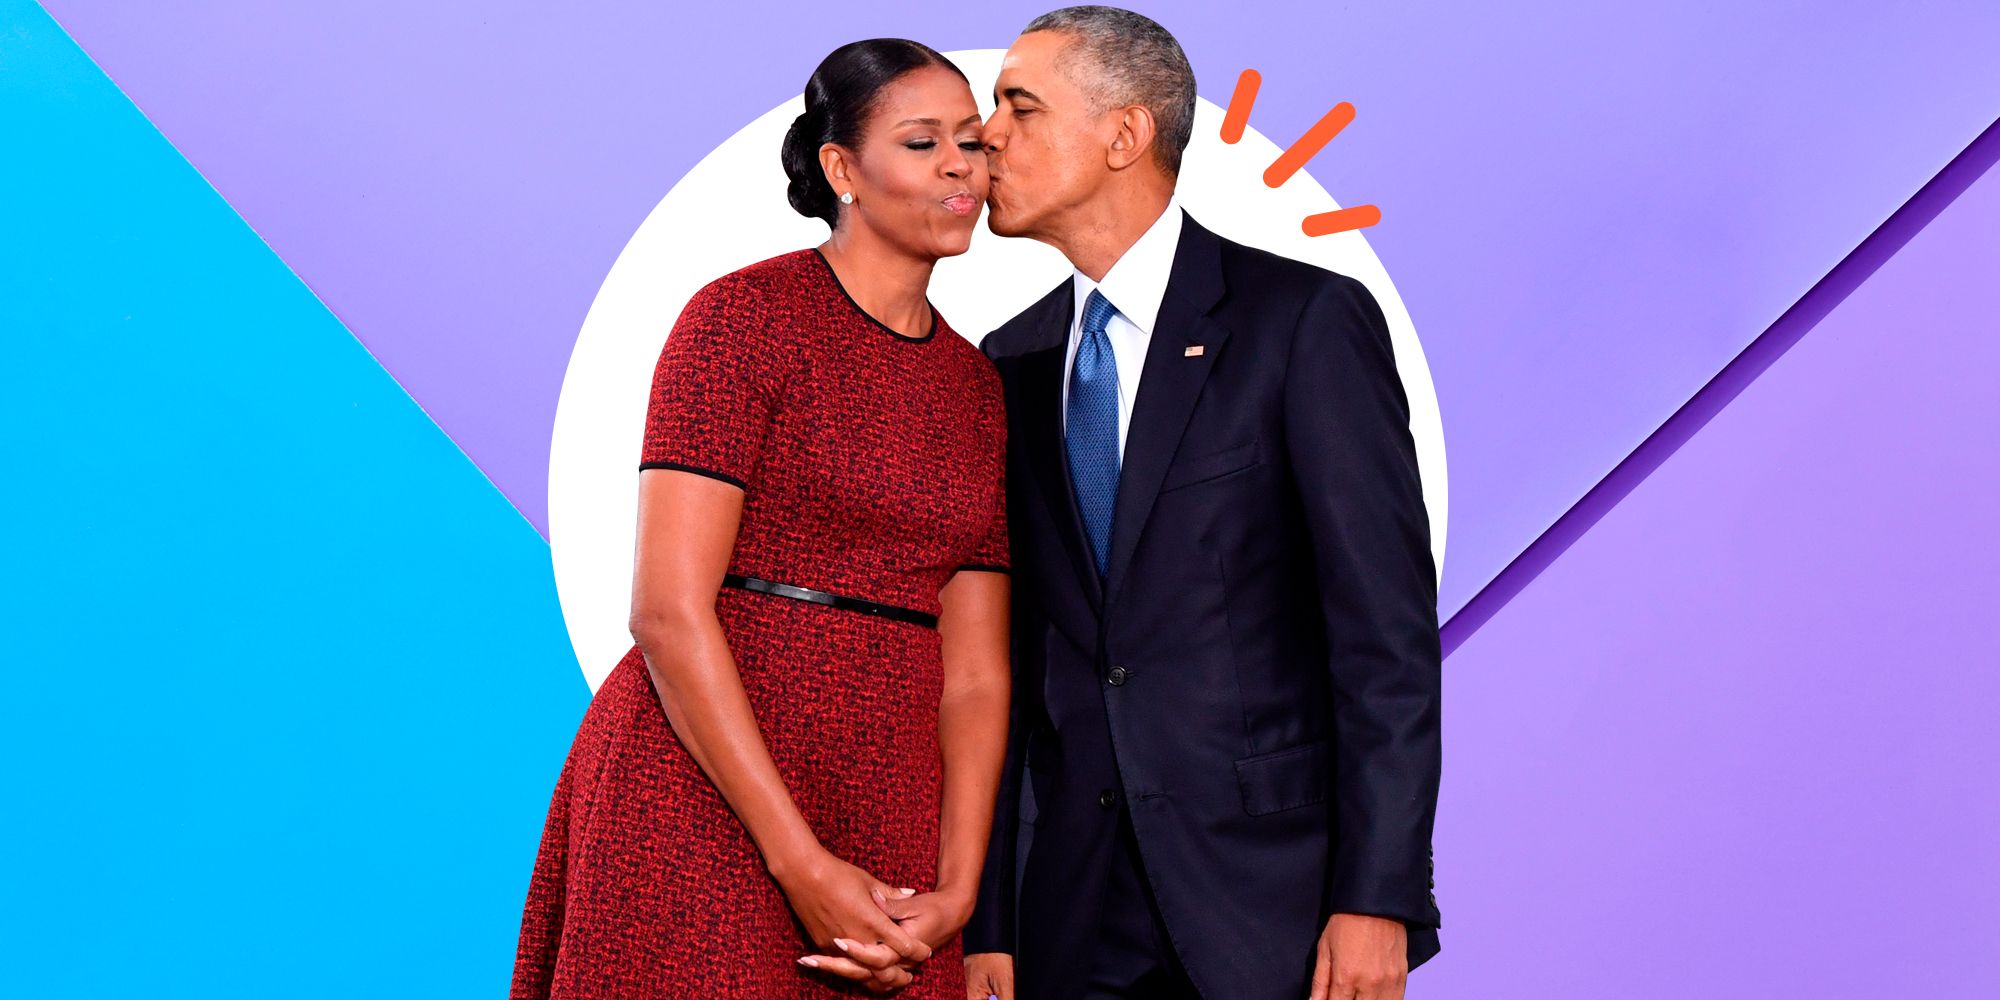 Οι Ομπάμα επιστρέφουν στον Λευκό Οίκο για την παρουσίαση των επίσημων πορτρέτων τους